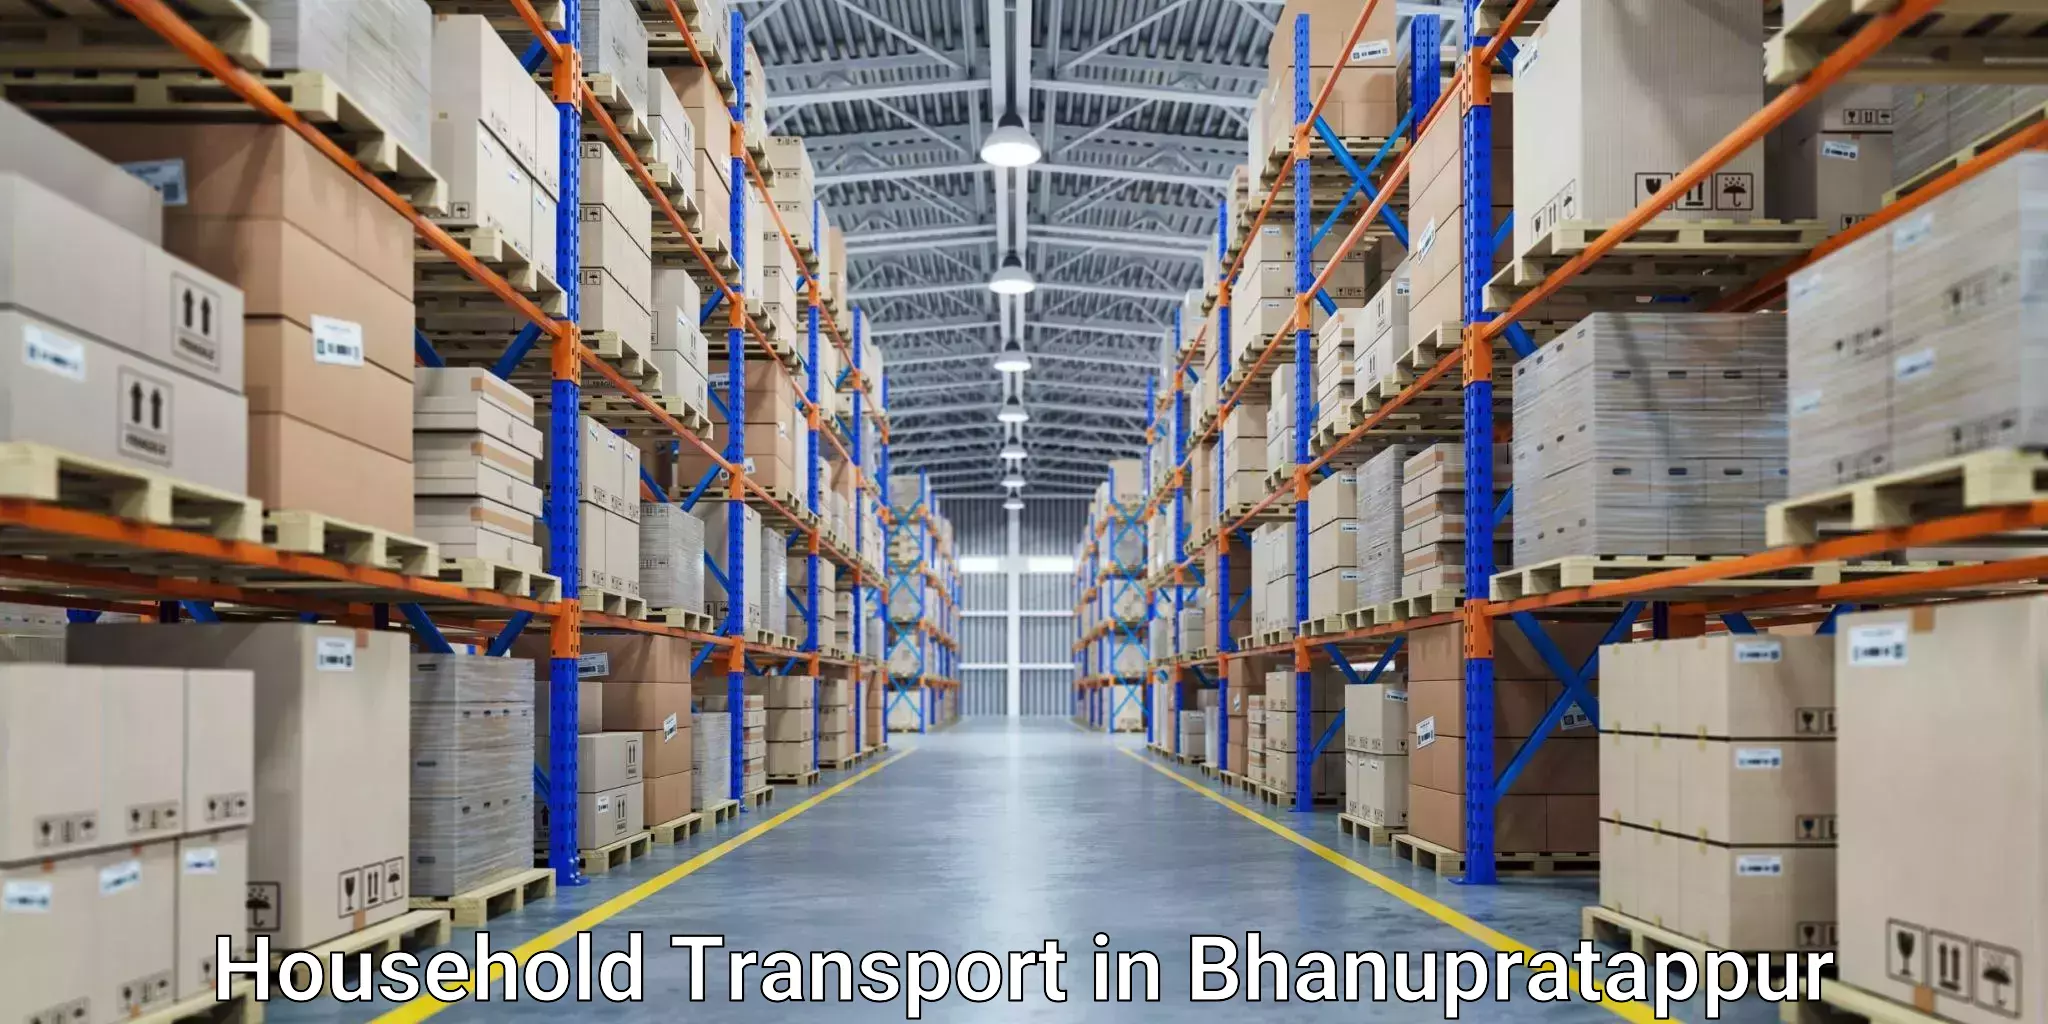 Furniture logistics in Bhanupratappur